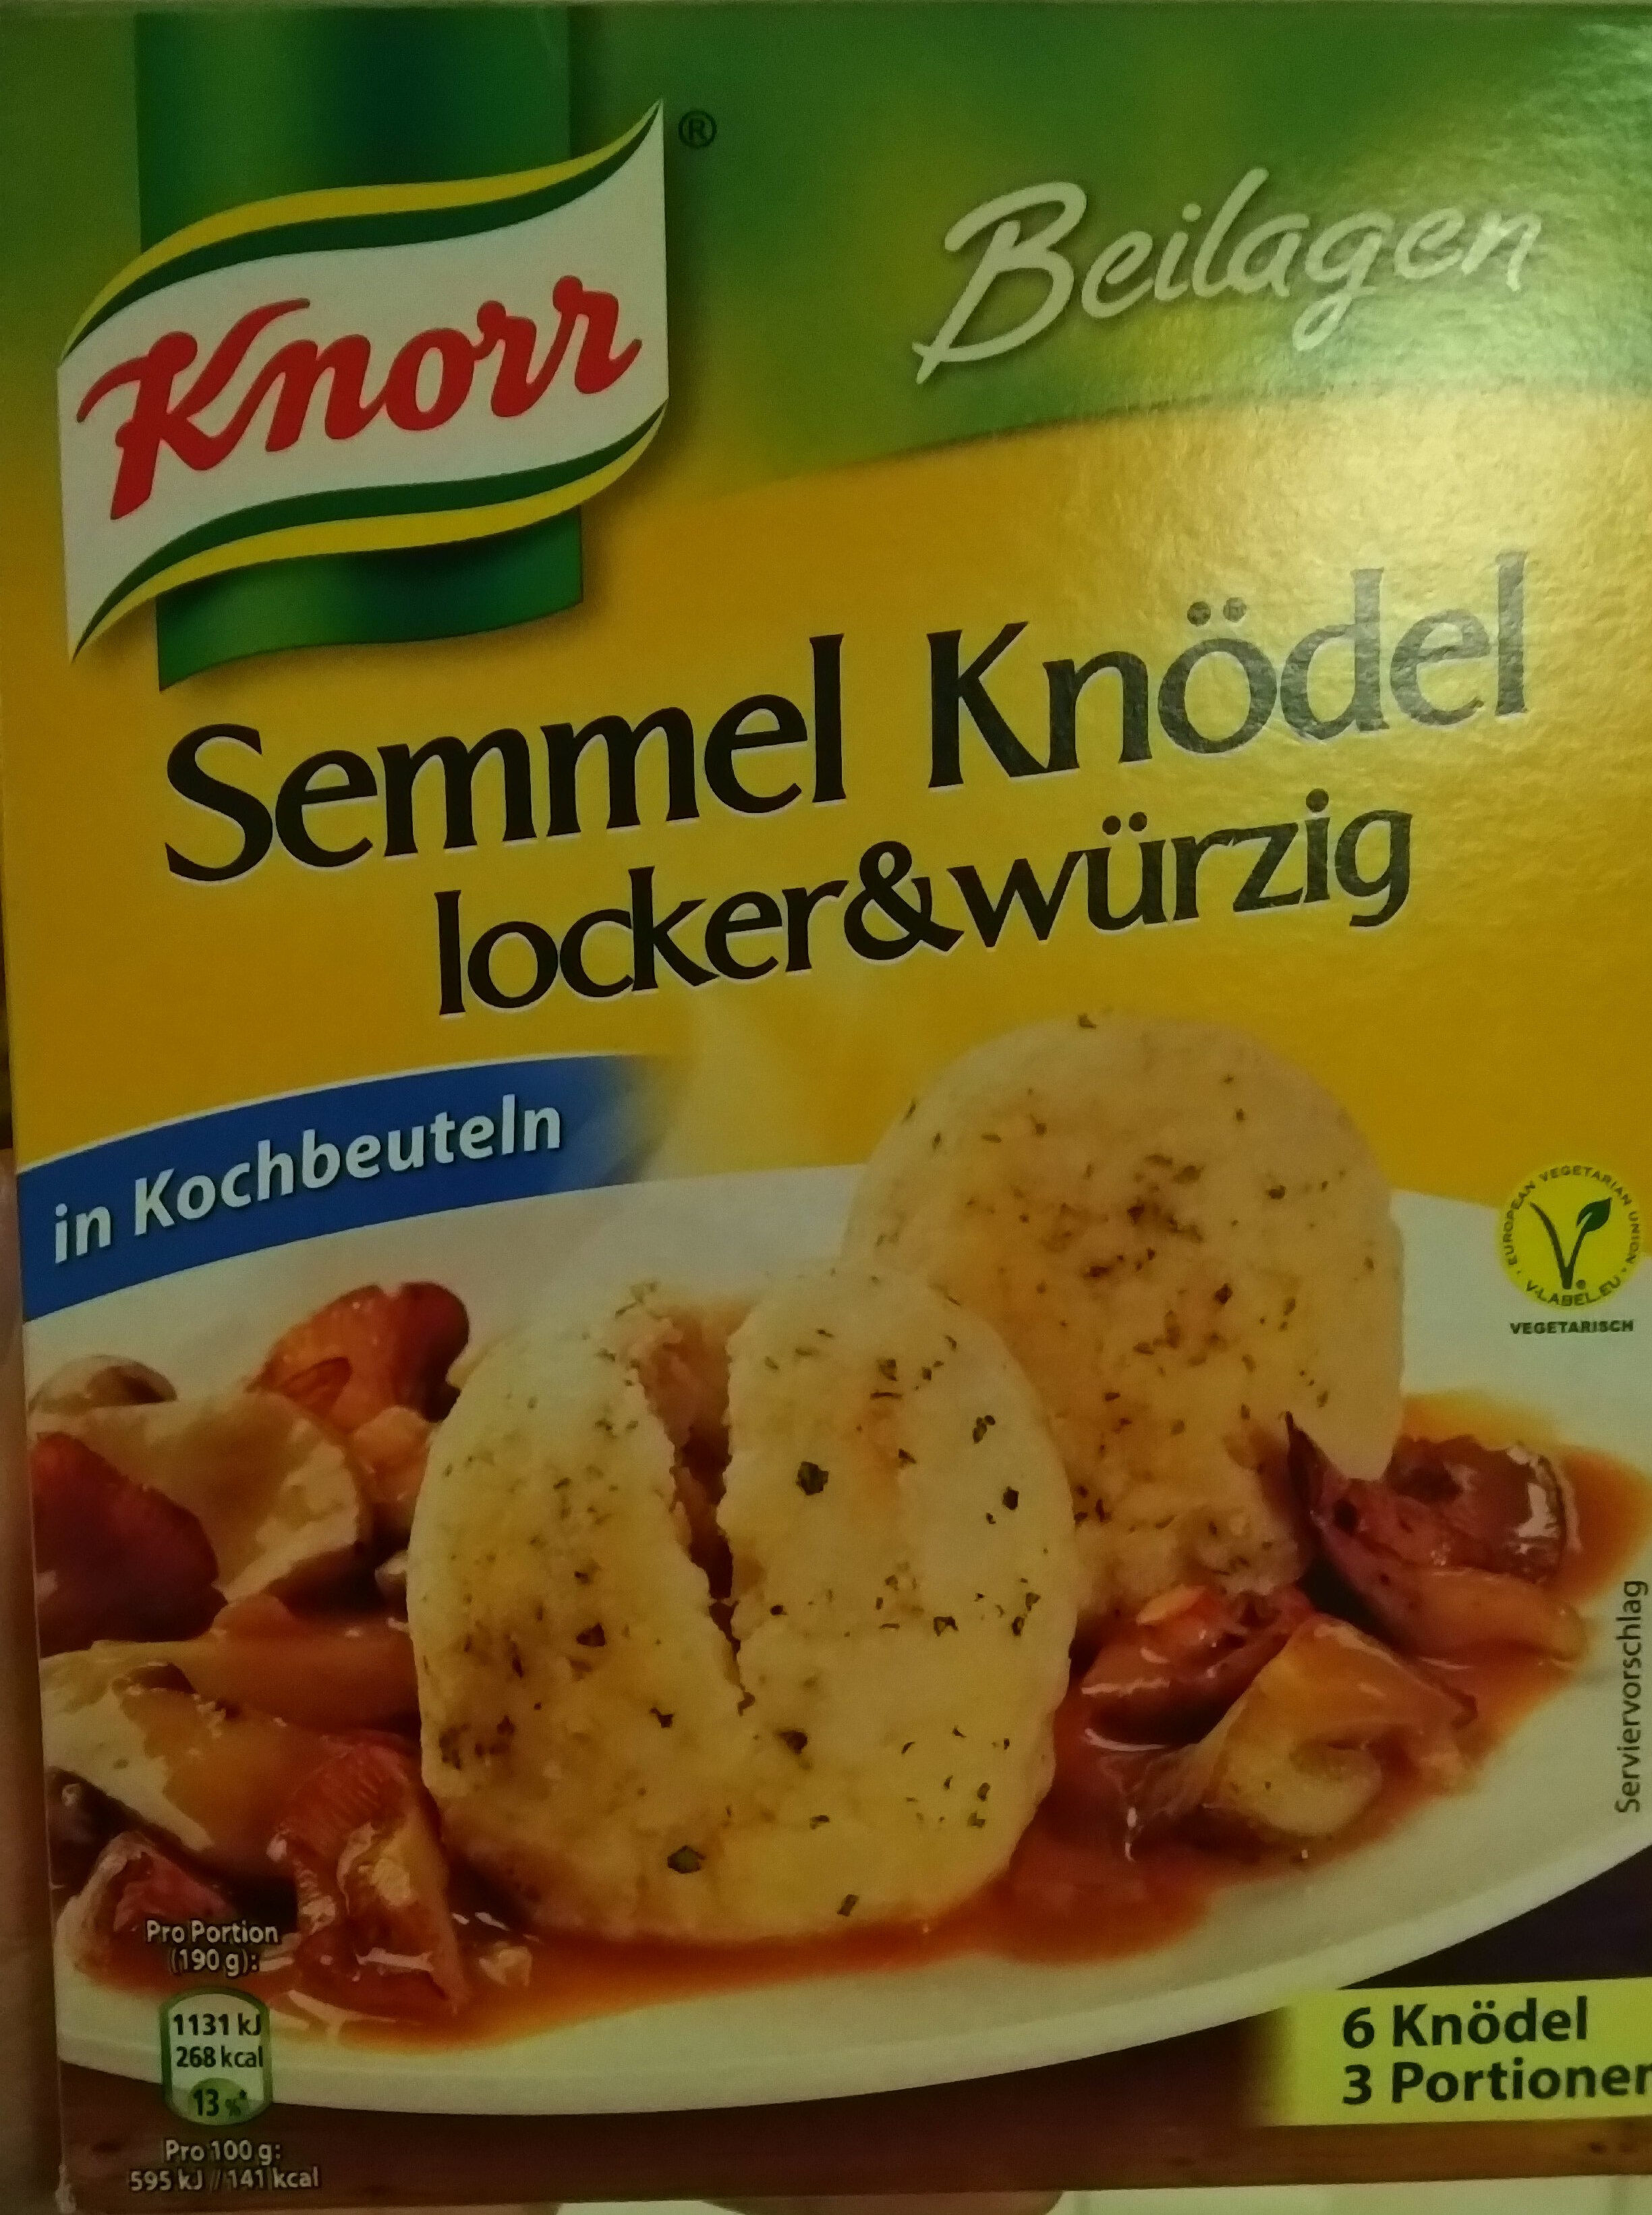 Semmel Knödel locker & würzig - Product - de